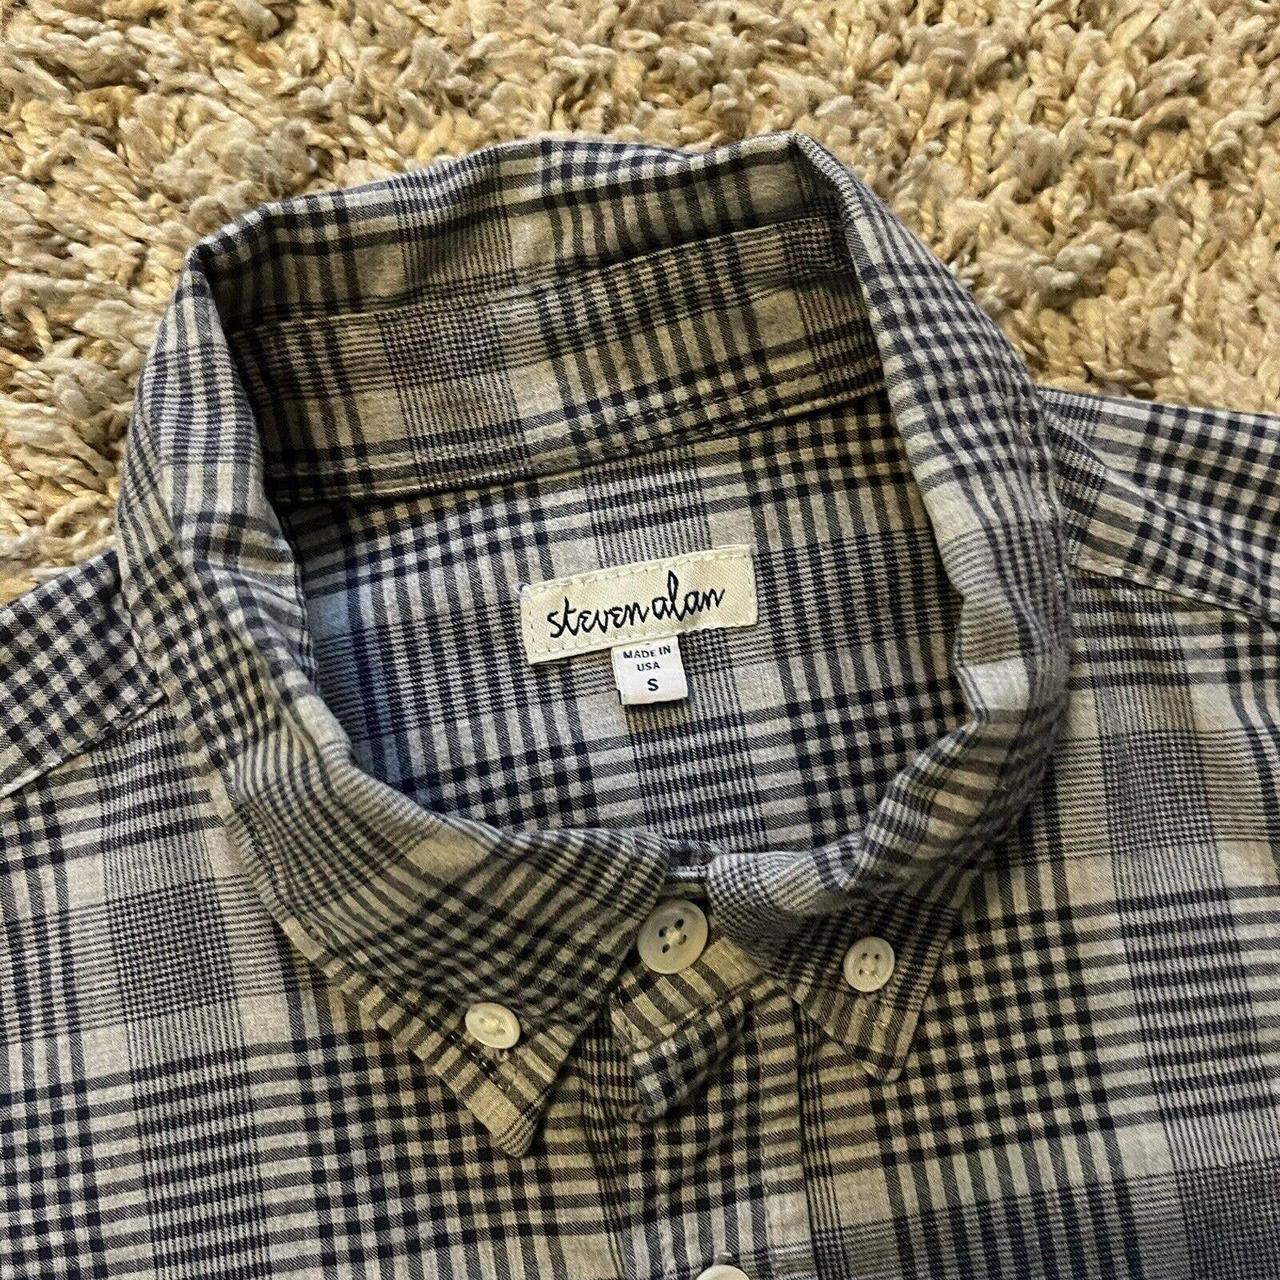 Steven Alan Plaid Button Up Shirt Made In USA... - Depop